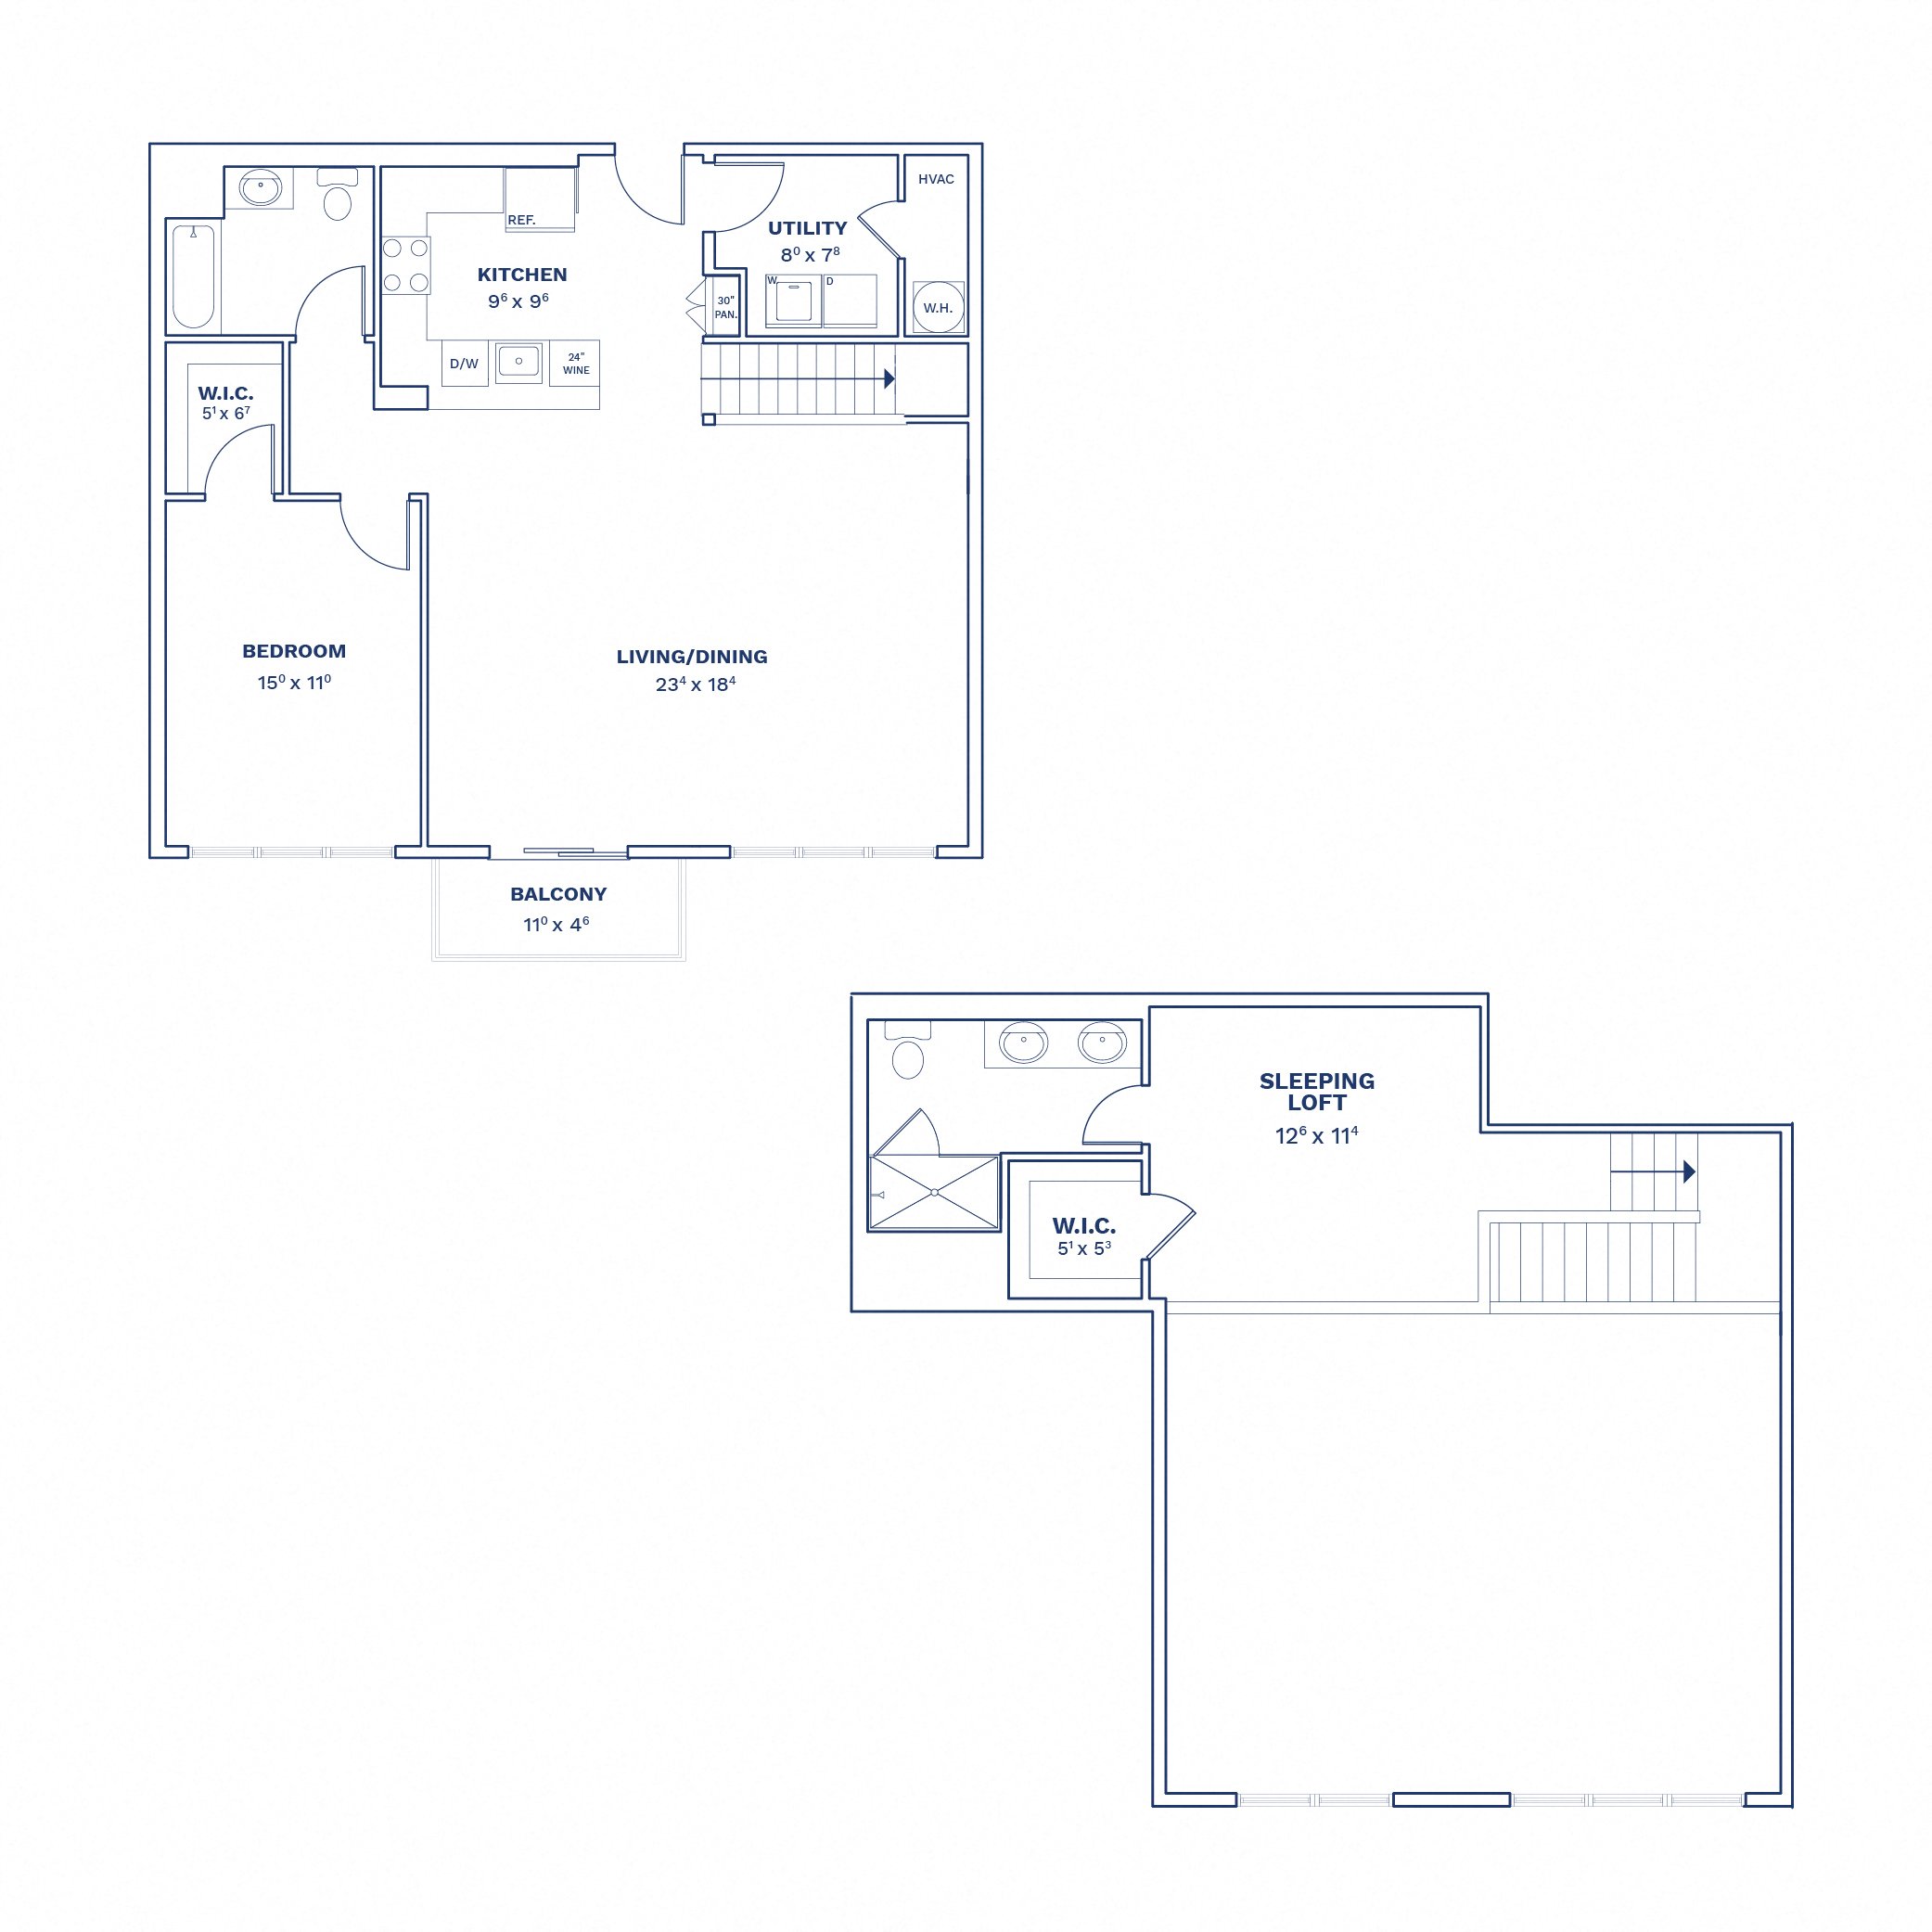 Floorplan of Unit 2 Bed/2 Bath Lofts-B2.1L